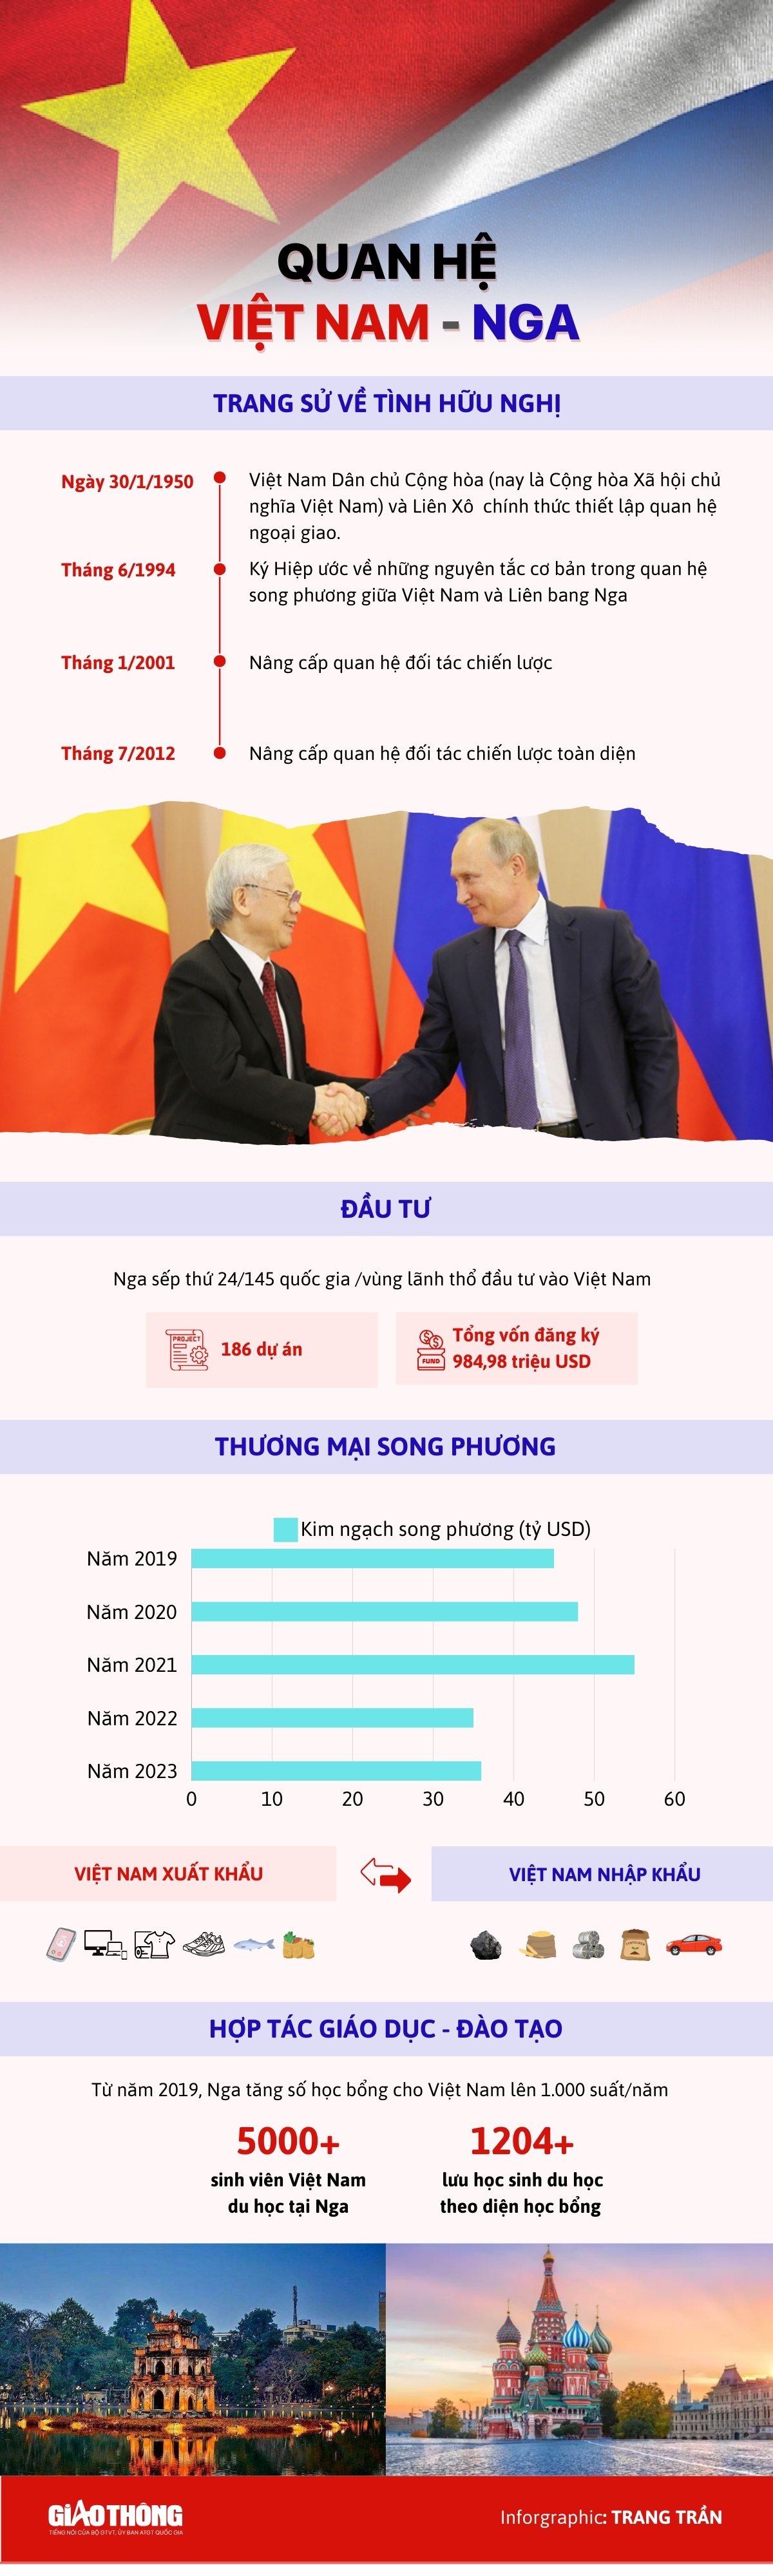 Thông điệp mạnh mẽ từ chuyến thăm Việt Nam của Tổng thống Nga Putin- Ảnh 2.